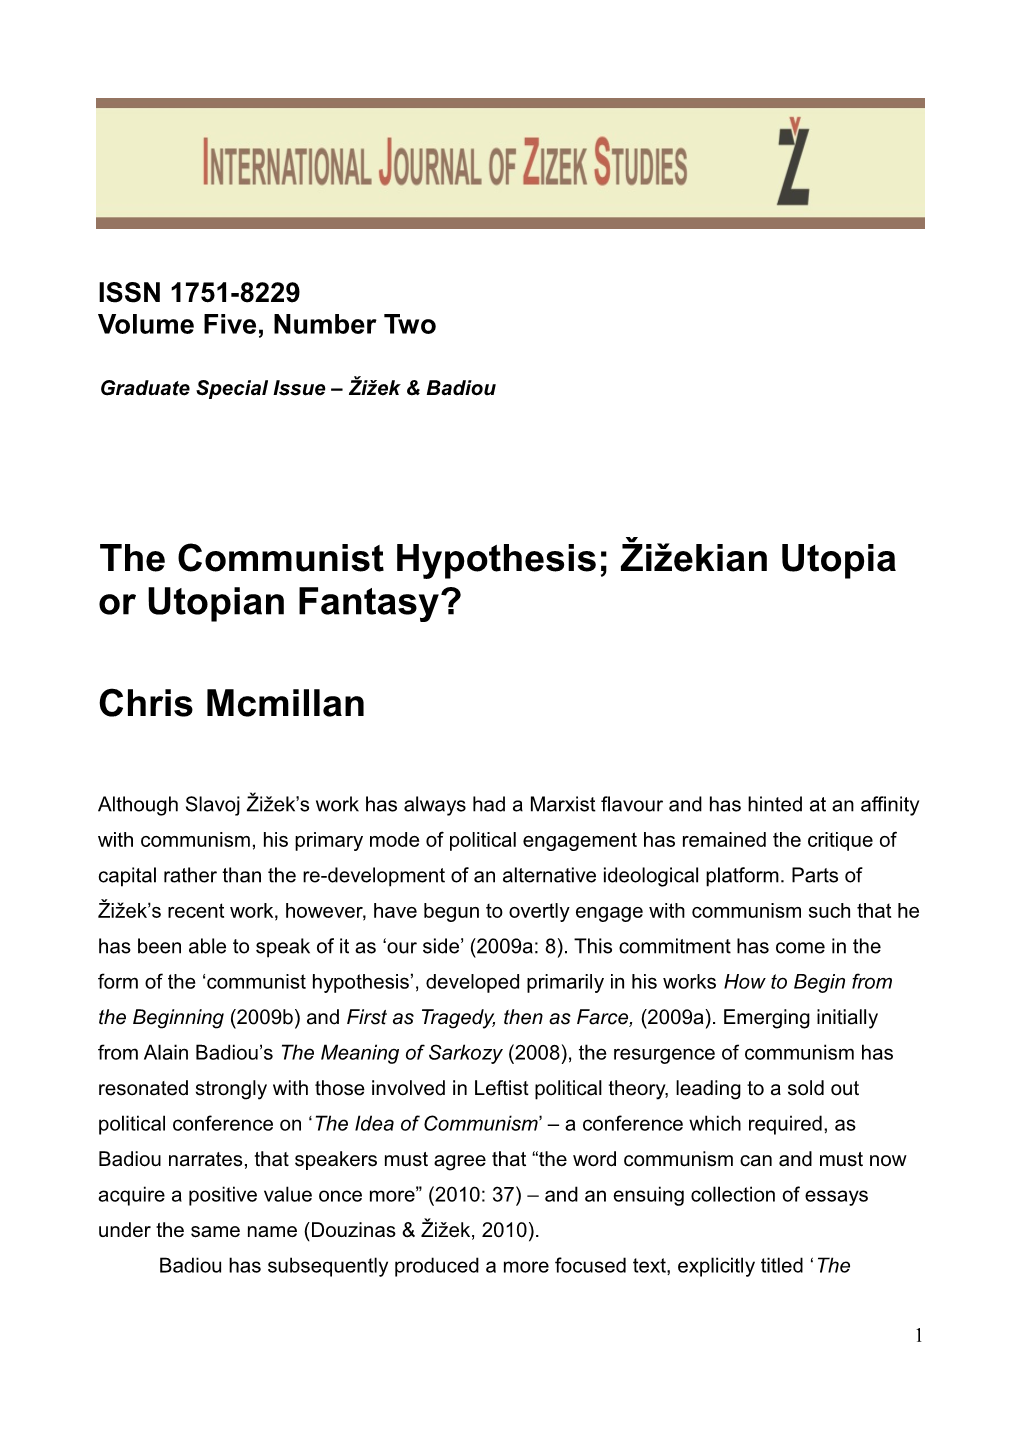 The Communist Hypothesis; Žižekian Utopia Or Utopian Fantasy?